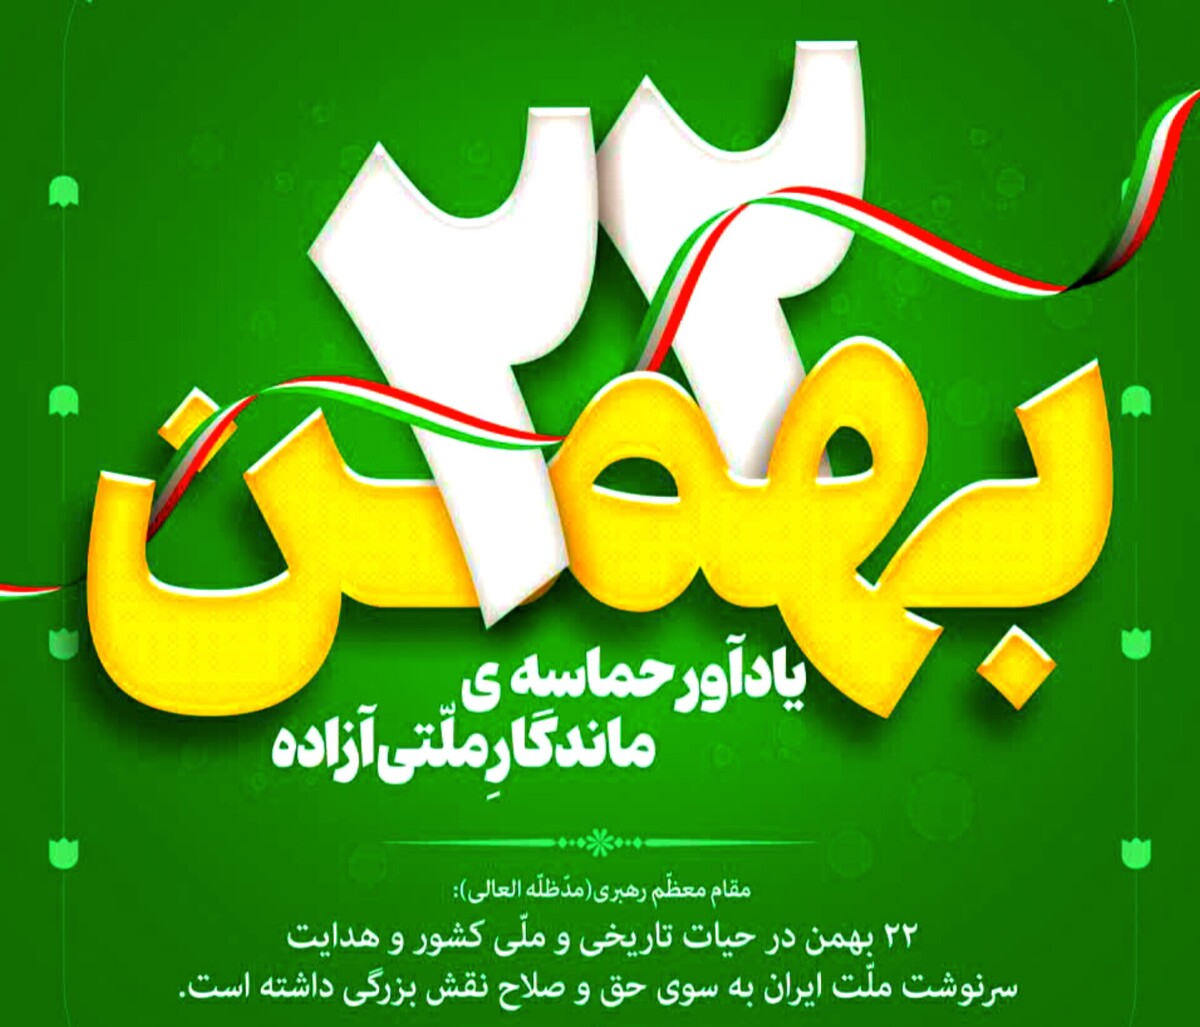 بیانیه شورای وحدت استان مرکزی به مناسبت چهل و پنجمین سالگرد پیروزی انقلاب اسلامی ایران